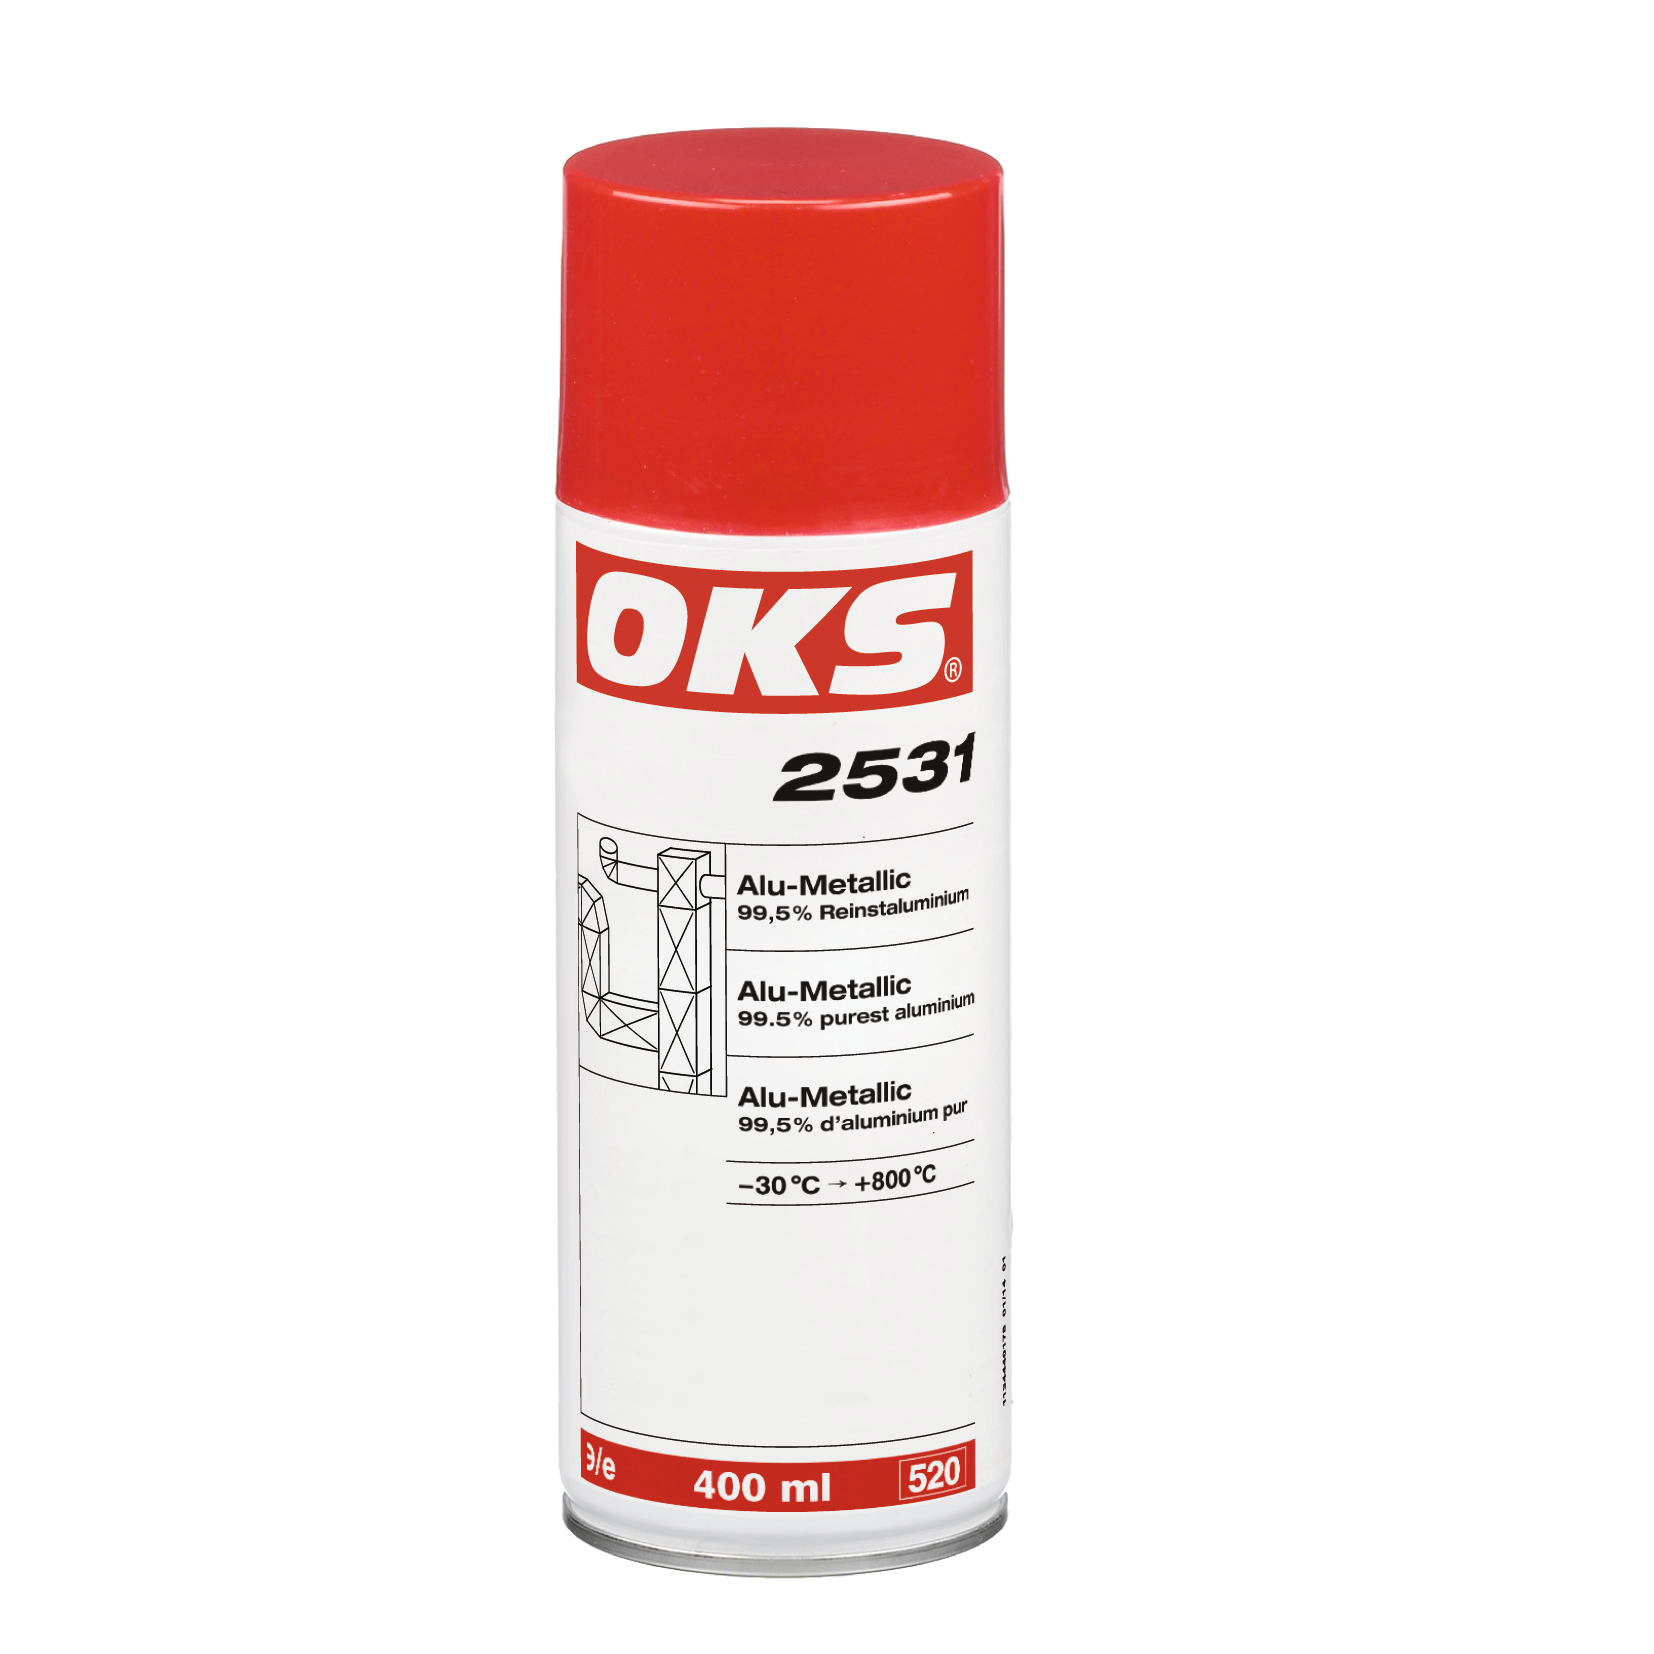 OKS2531-400ML OKS 2531 is een decoratieve corrosiebescherming op basis van aluminium voor binnen- en buitentoepassingen.